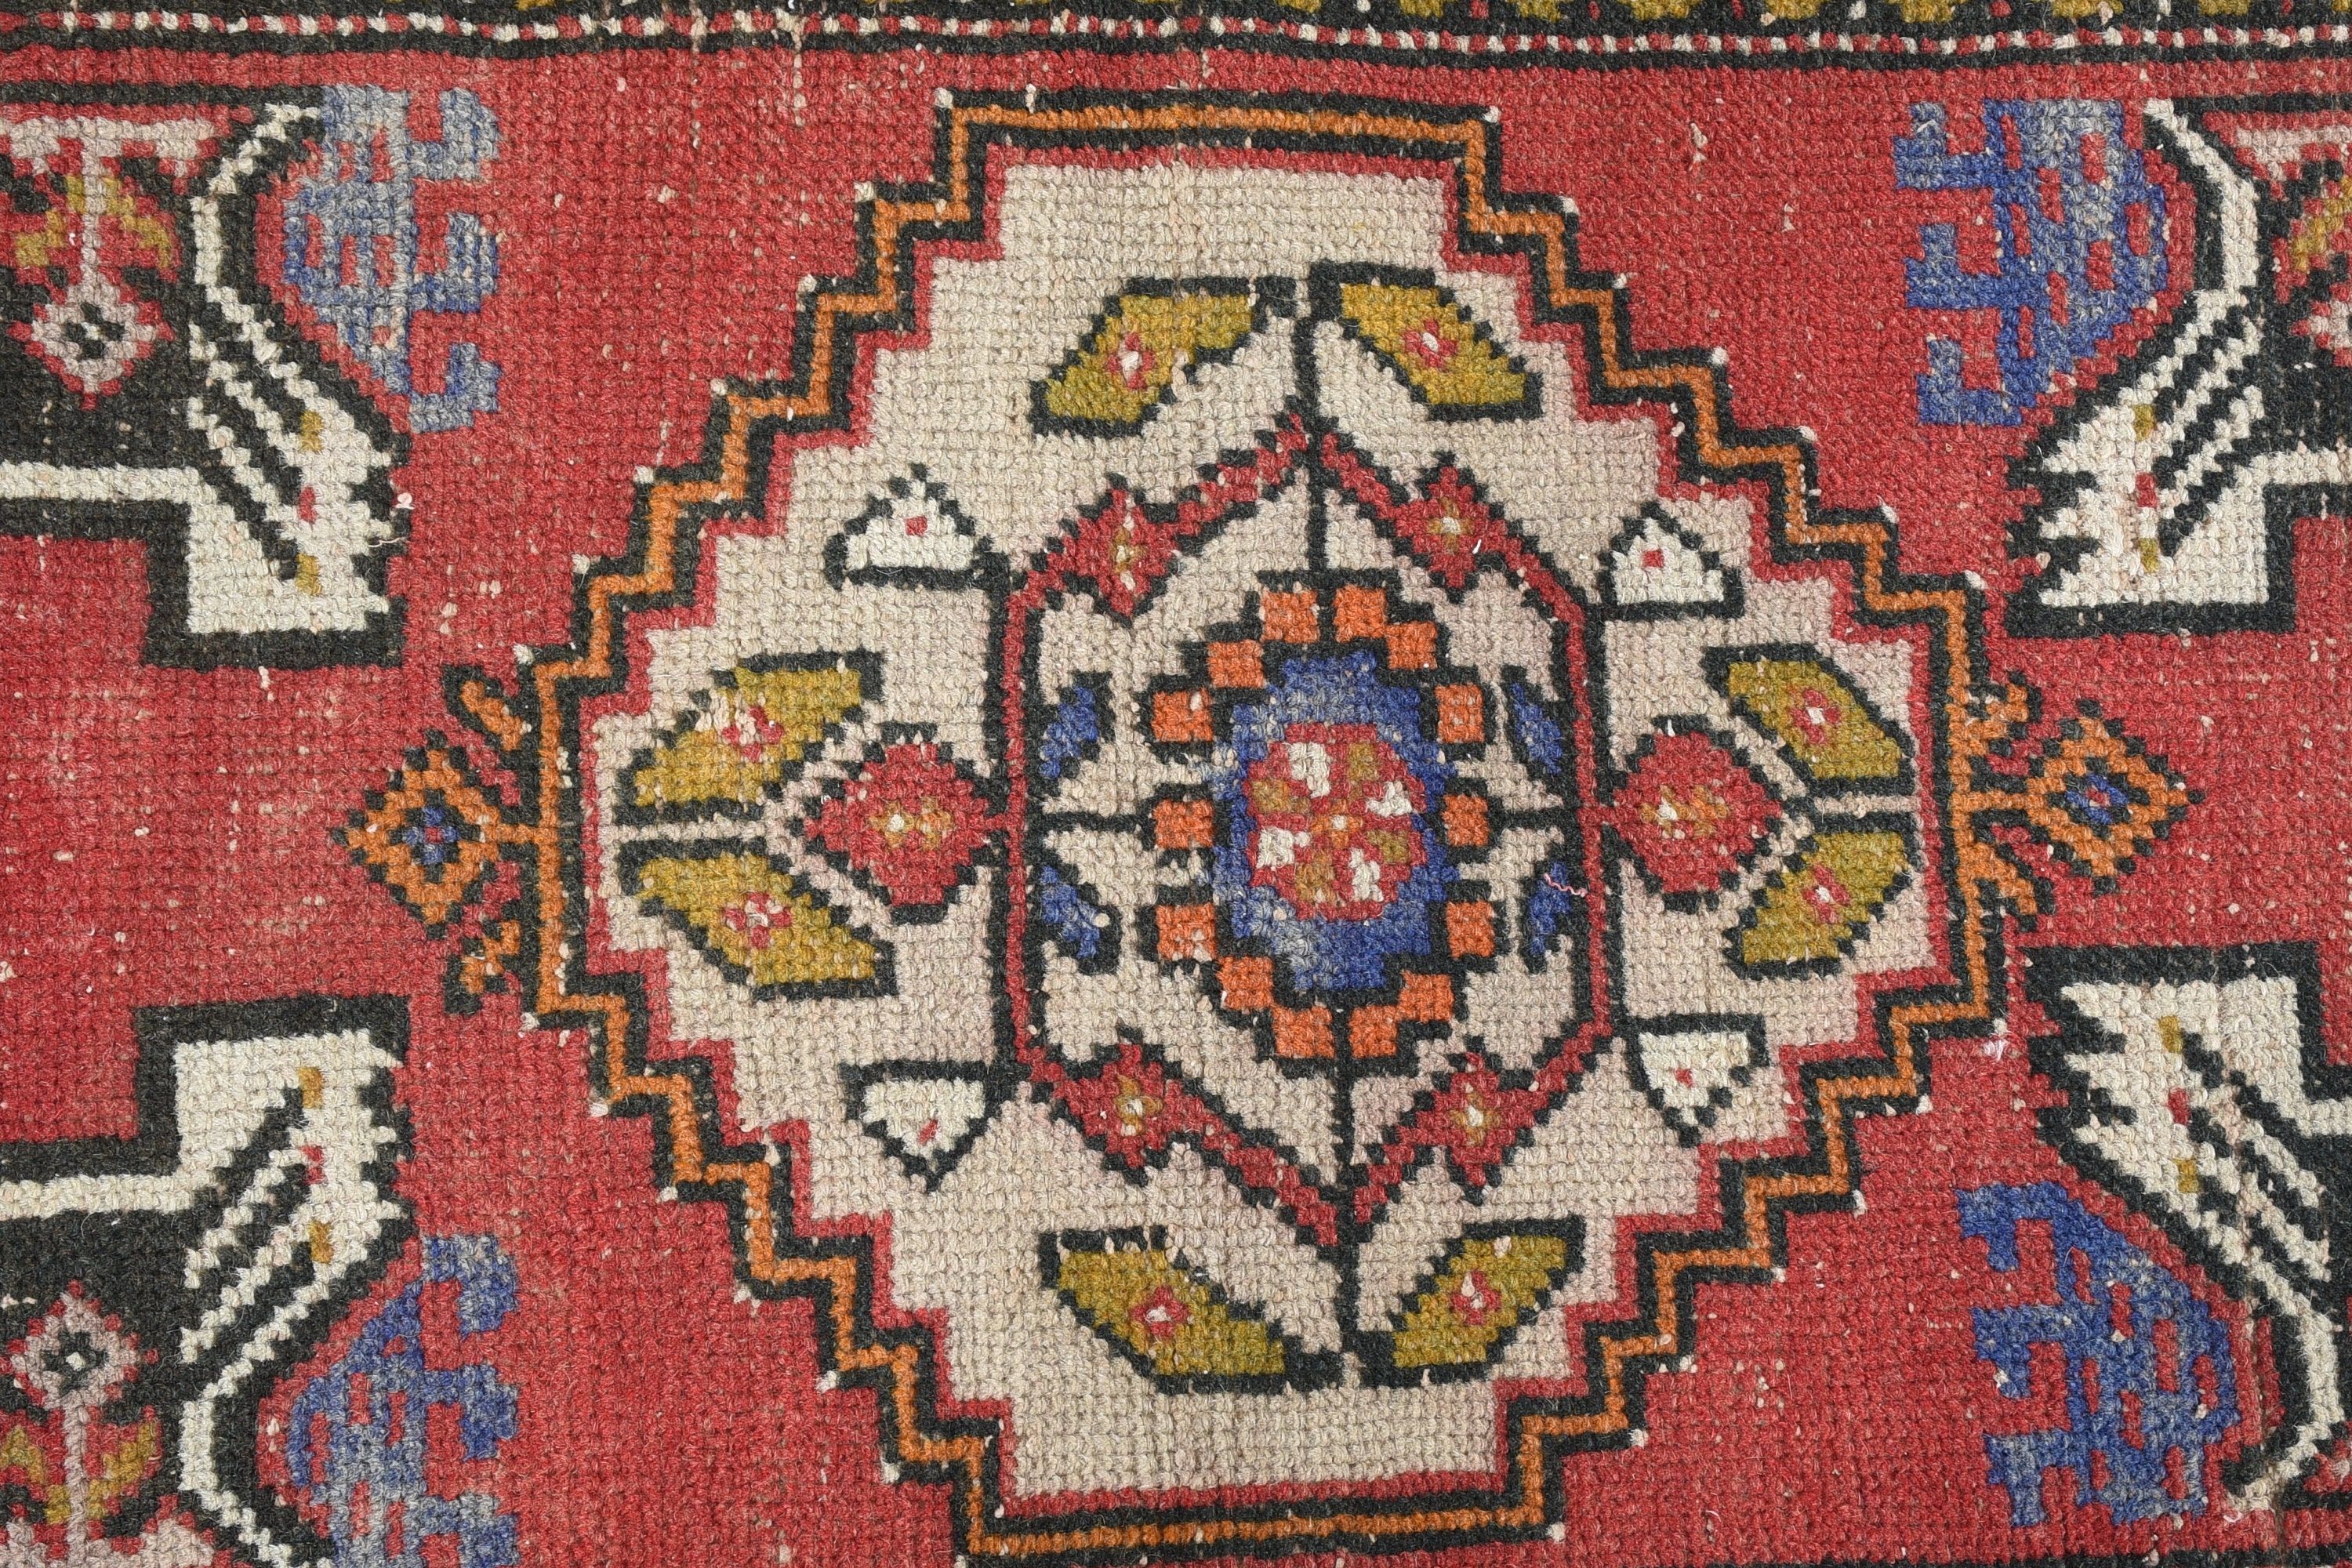 Turkish Rug, Door Mat Rug, 1.6x2.7 ft Small Rug, Rugs for Door Mat, Floor Rugs, Oushak Rugs, Red Oriental Rug, Nursery Rugs, Vintage Rugs